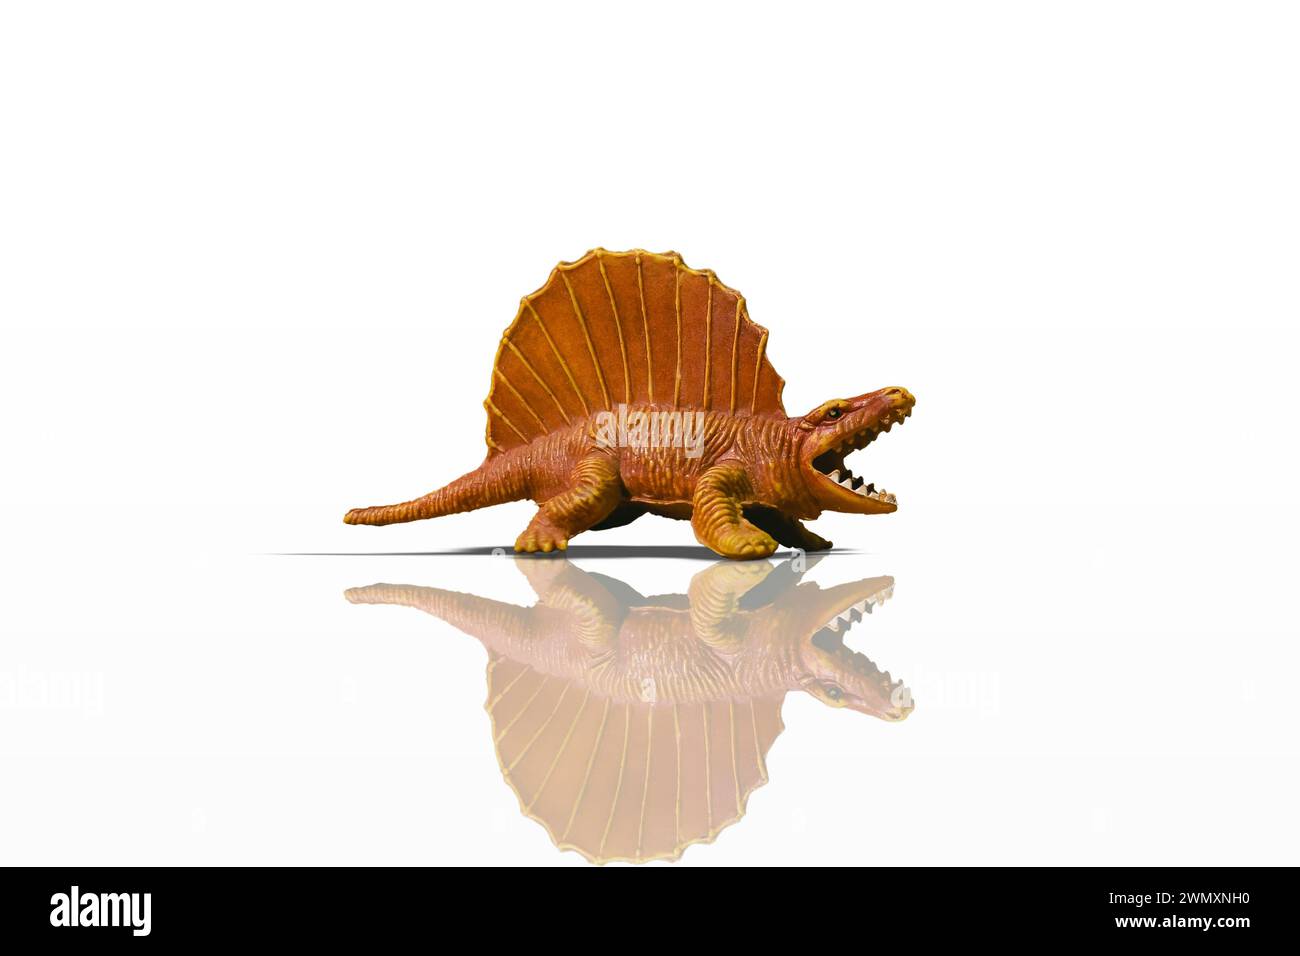 Figurine de dinosaure Dimetrodon orange agressive, isolée sur fond blanc avec reflet et ombre ajoutés Banque D'Images